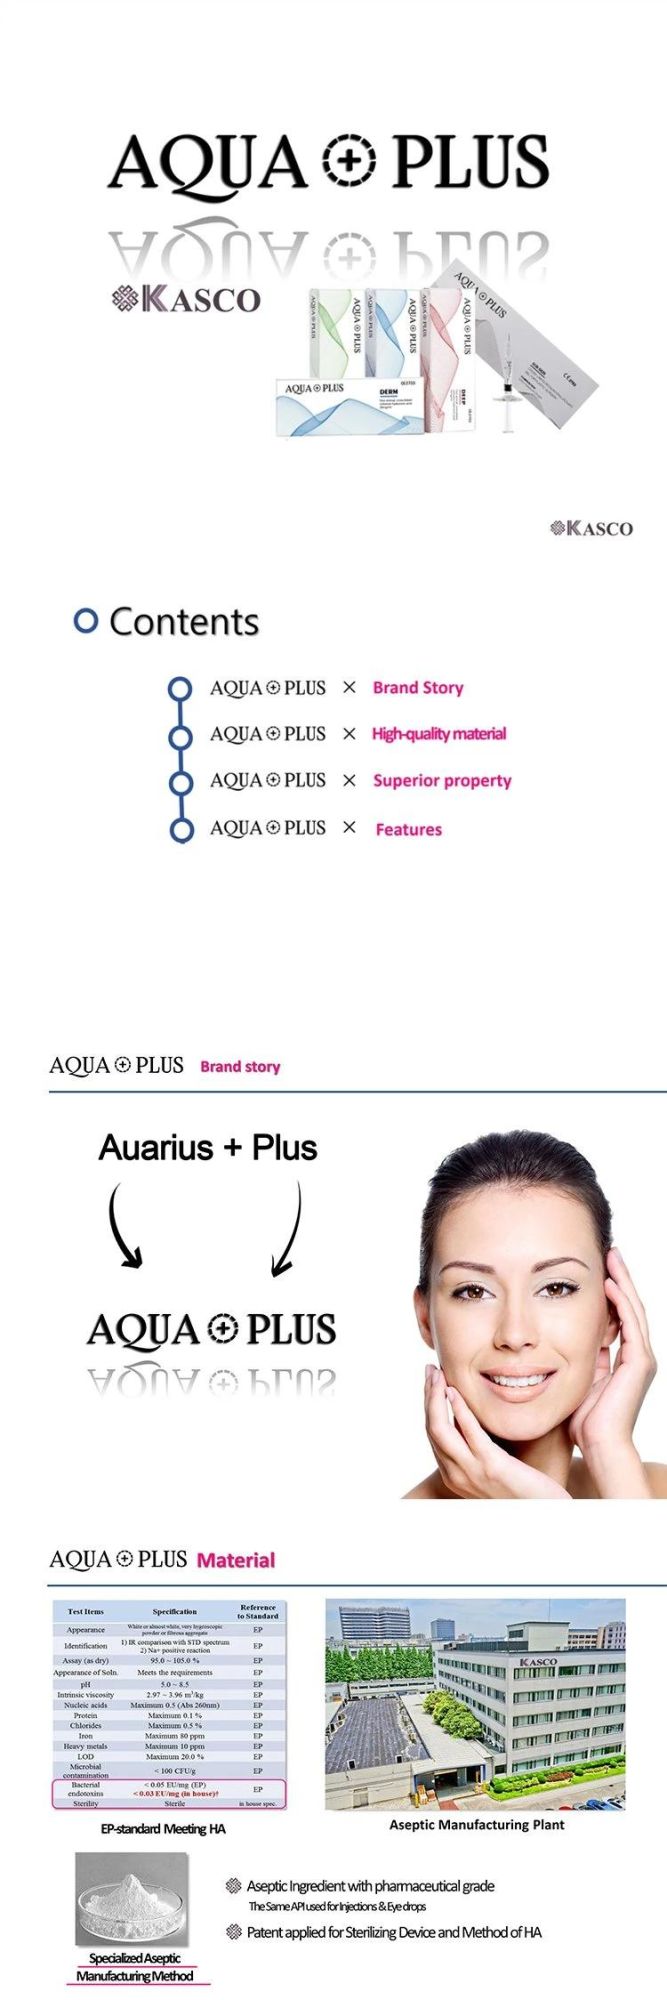 Aqua Plus Injectable Ha Gel Cross Linked 2ml Deep Hyaluronic Acid Dermal Fillers